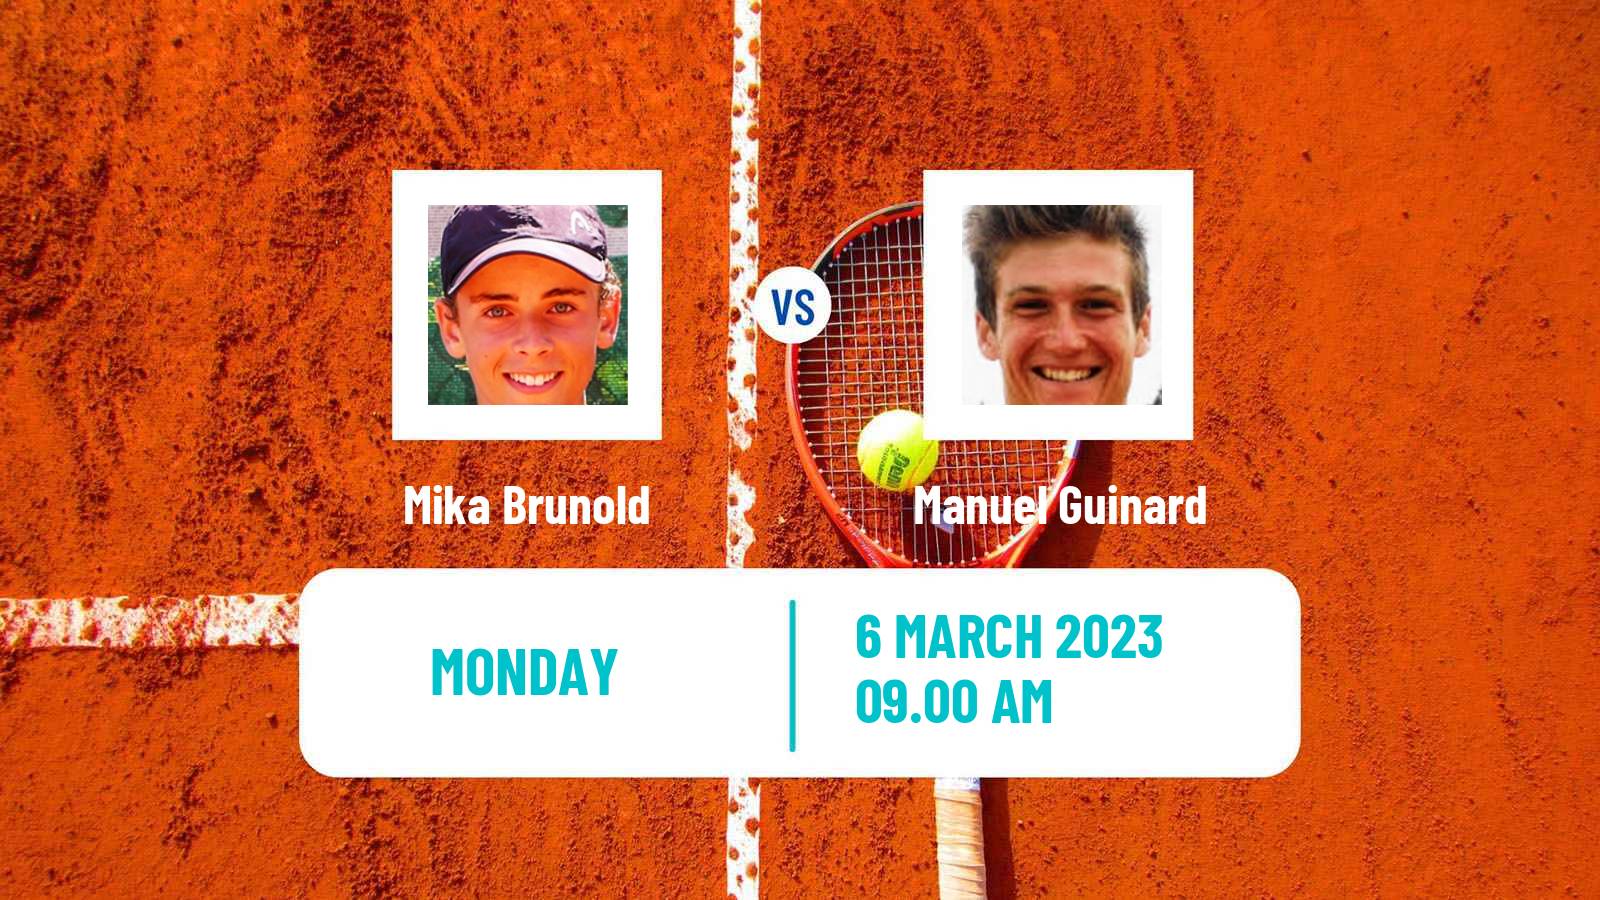 Tennis ATP Challenger Mika Brunold - Manuel Guinard